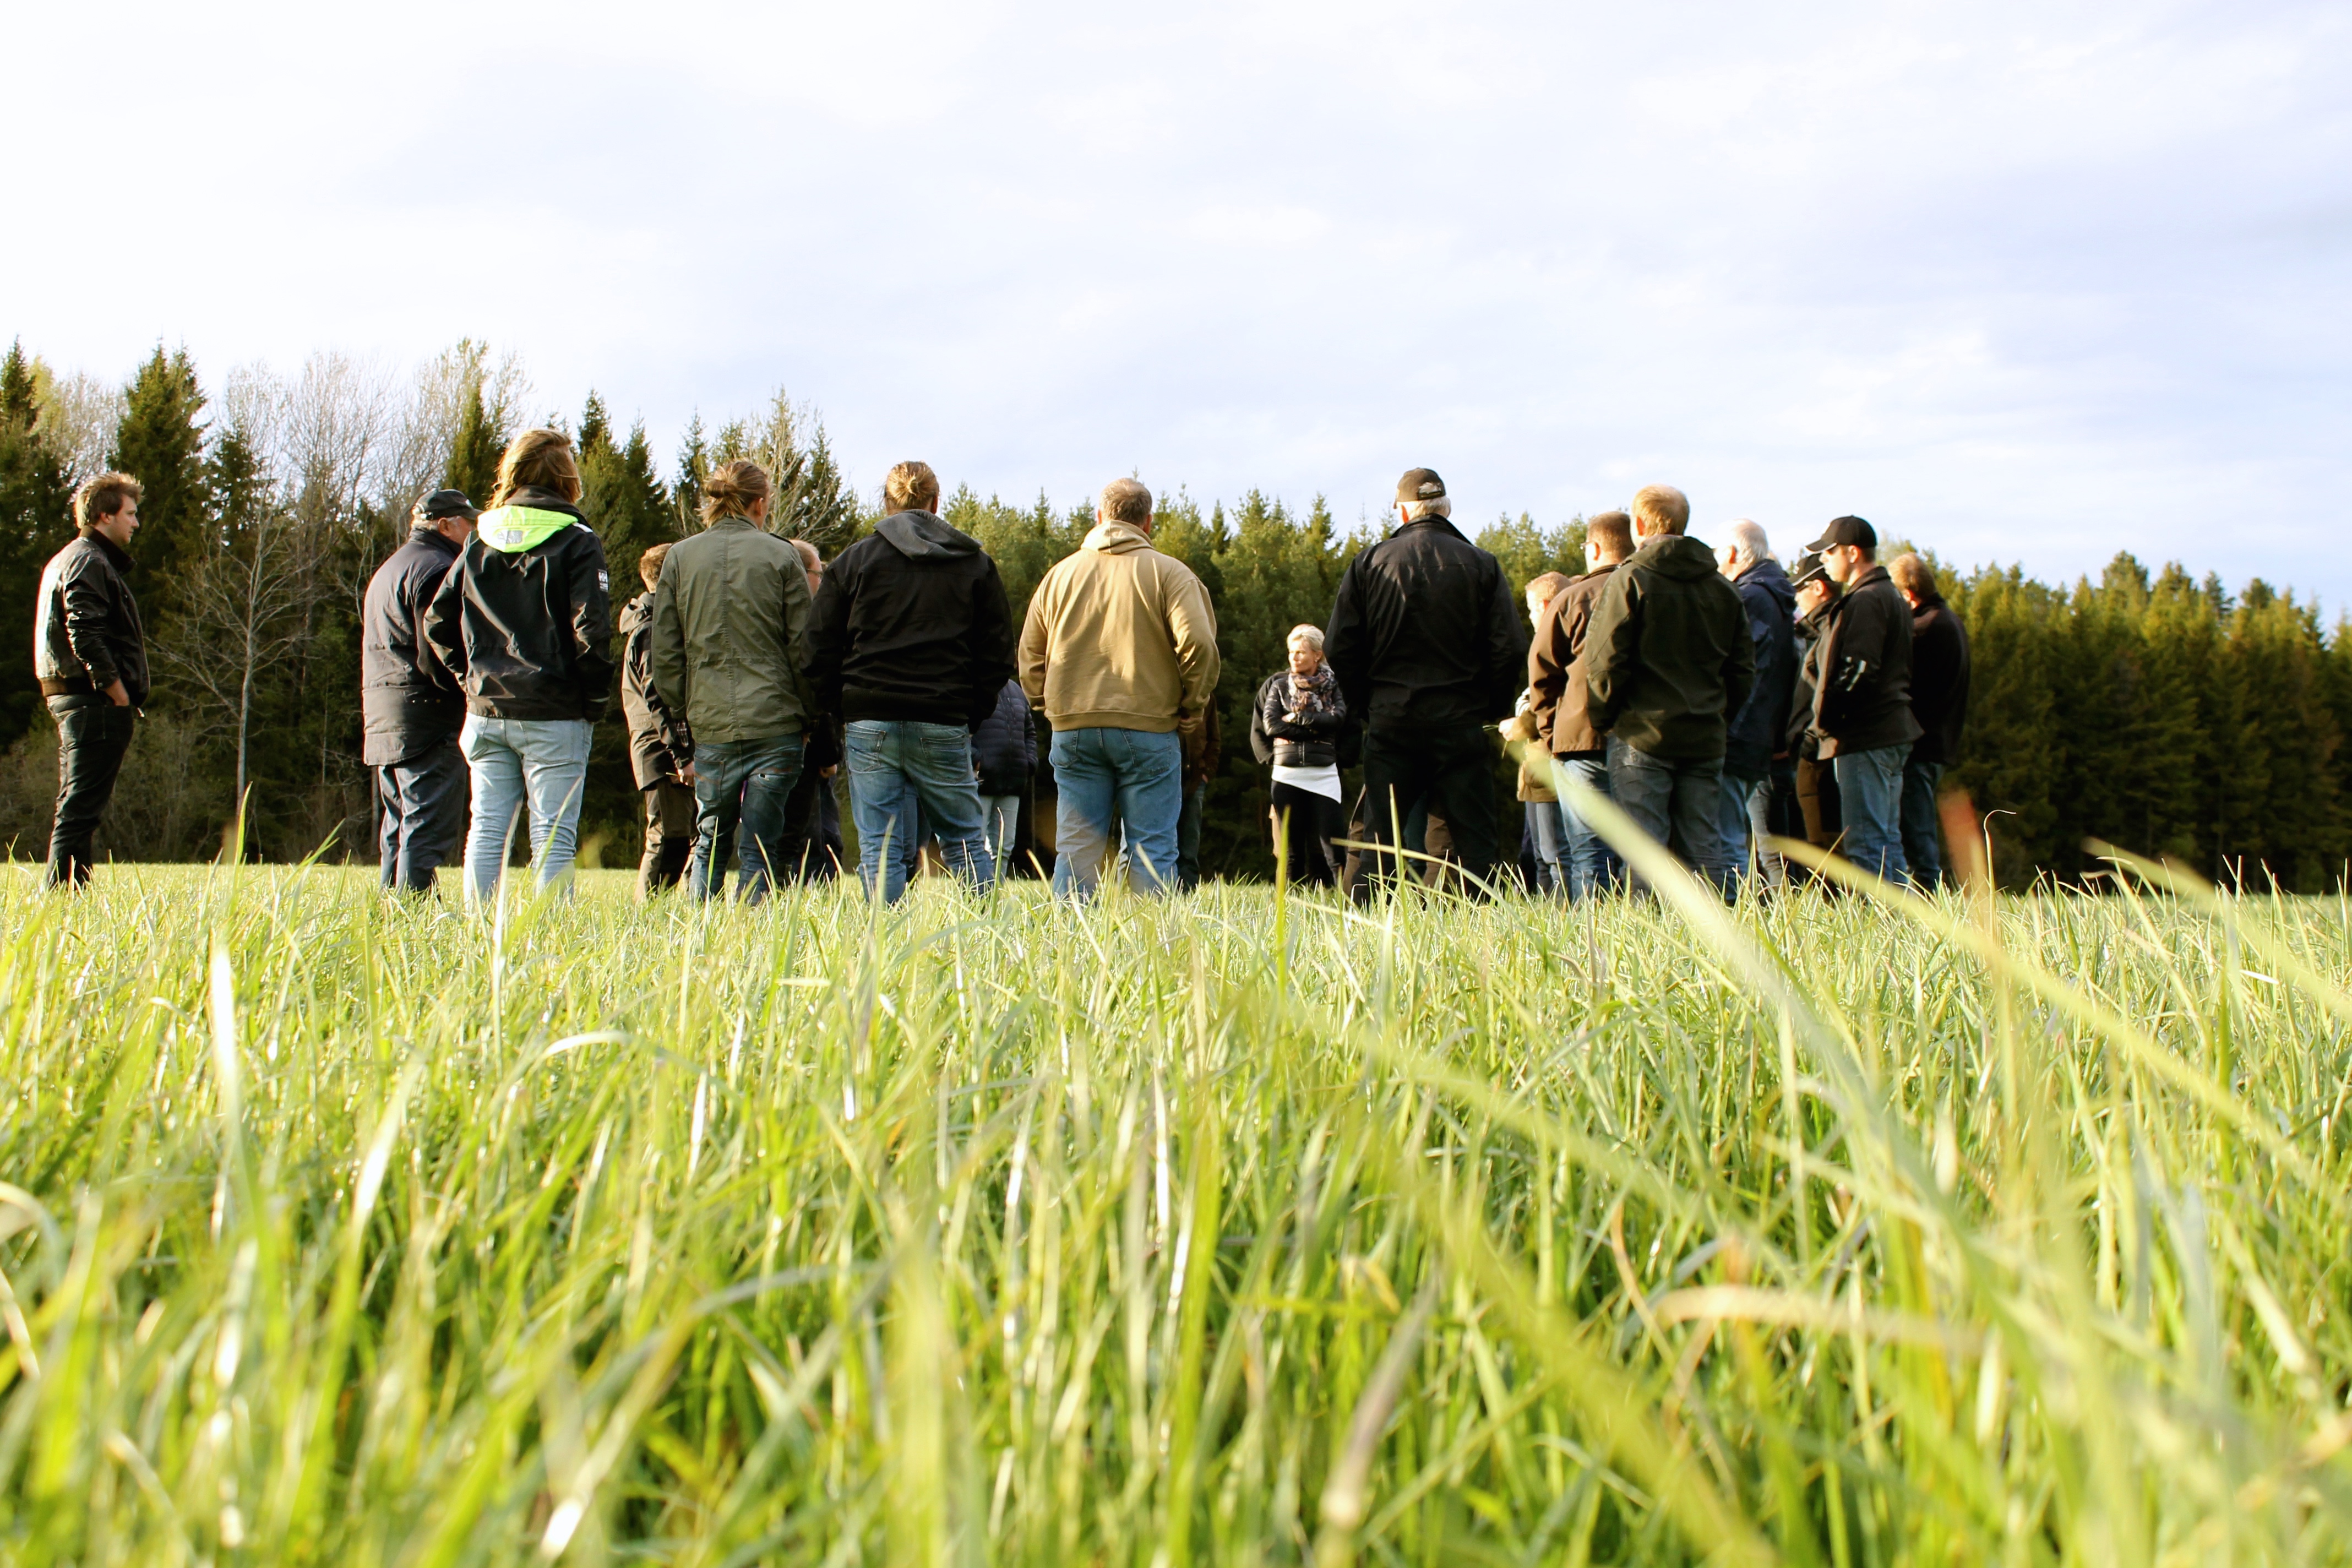 Samling av människor som står på ett grönt fält, foto.